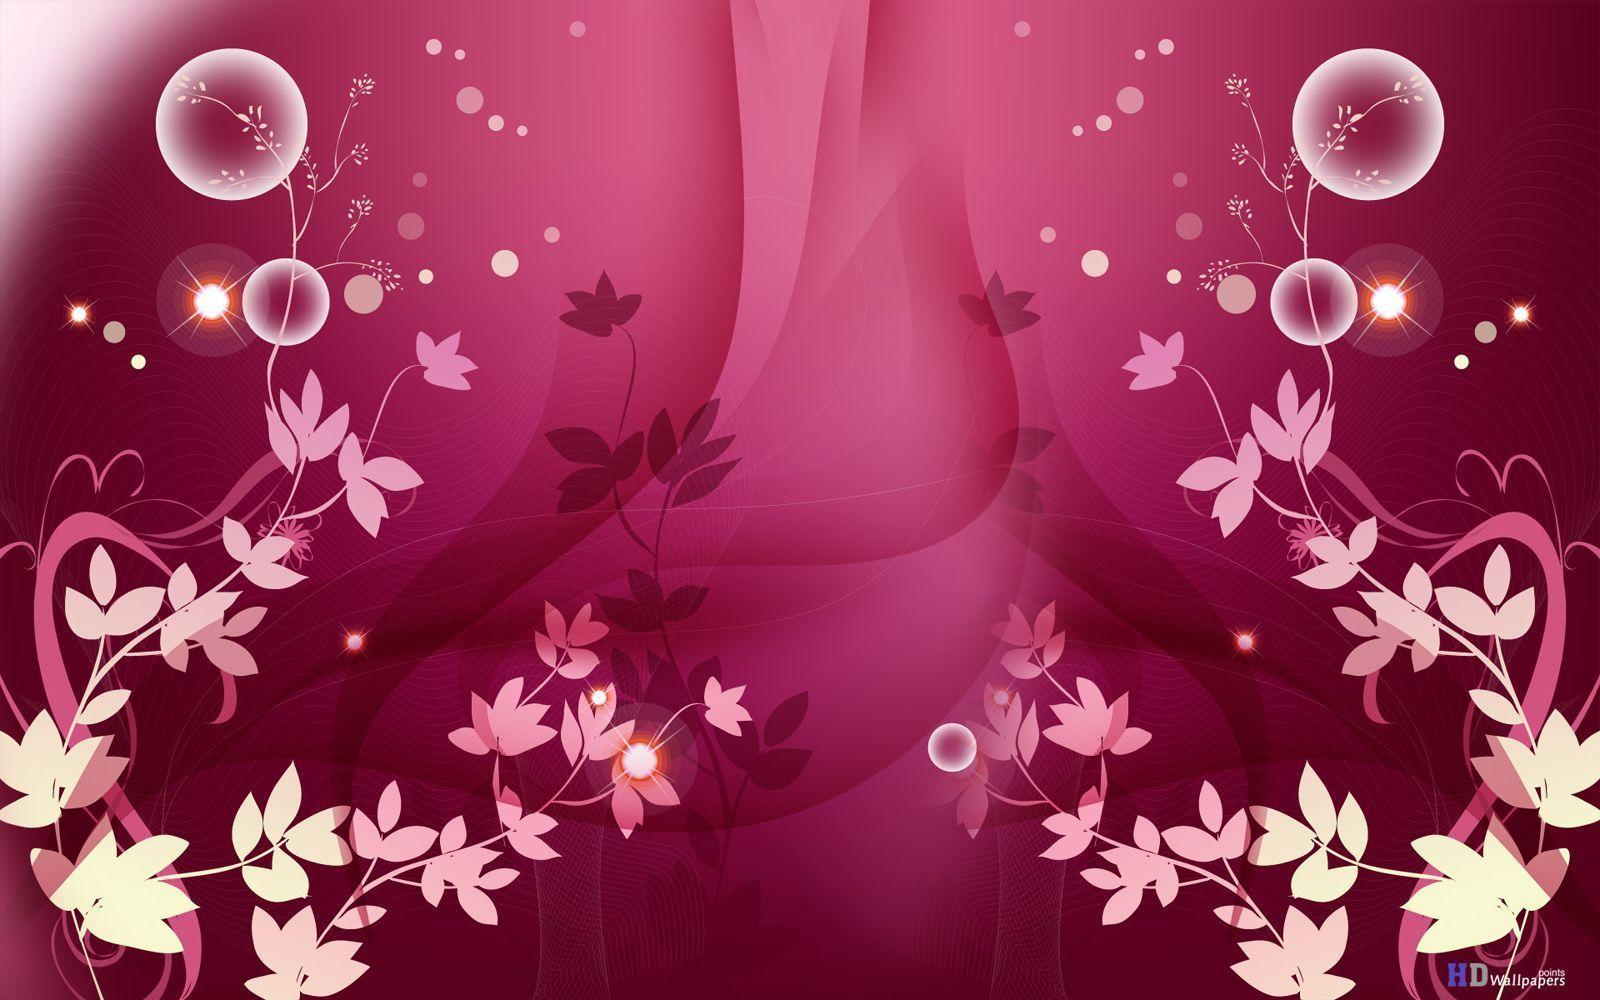 Pink Flowers Wallpaper HD Wallpaper. Cool Walldiskpaper.com